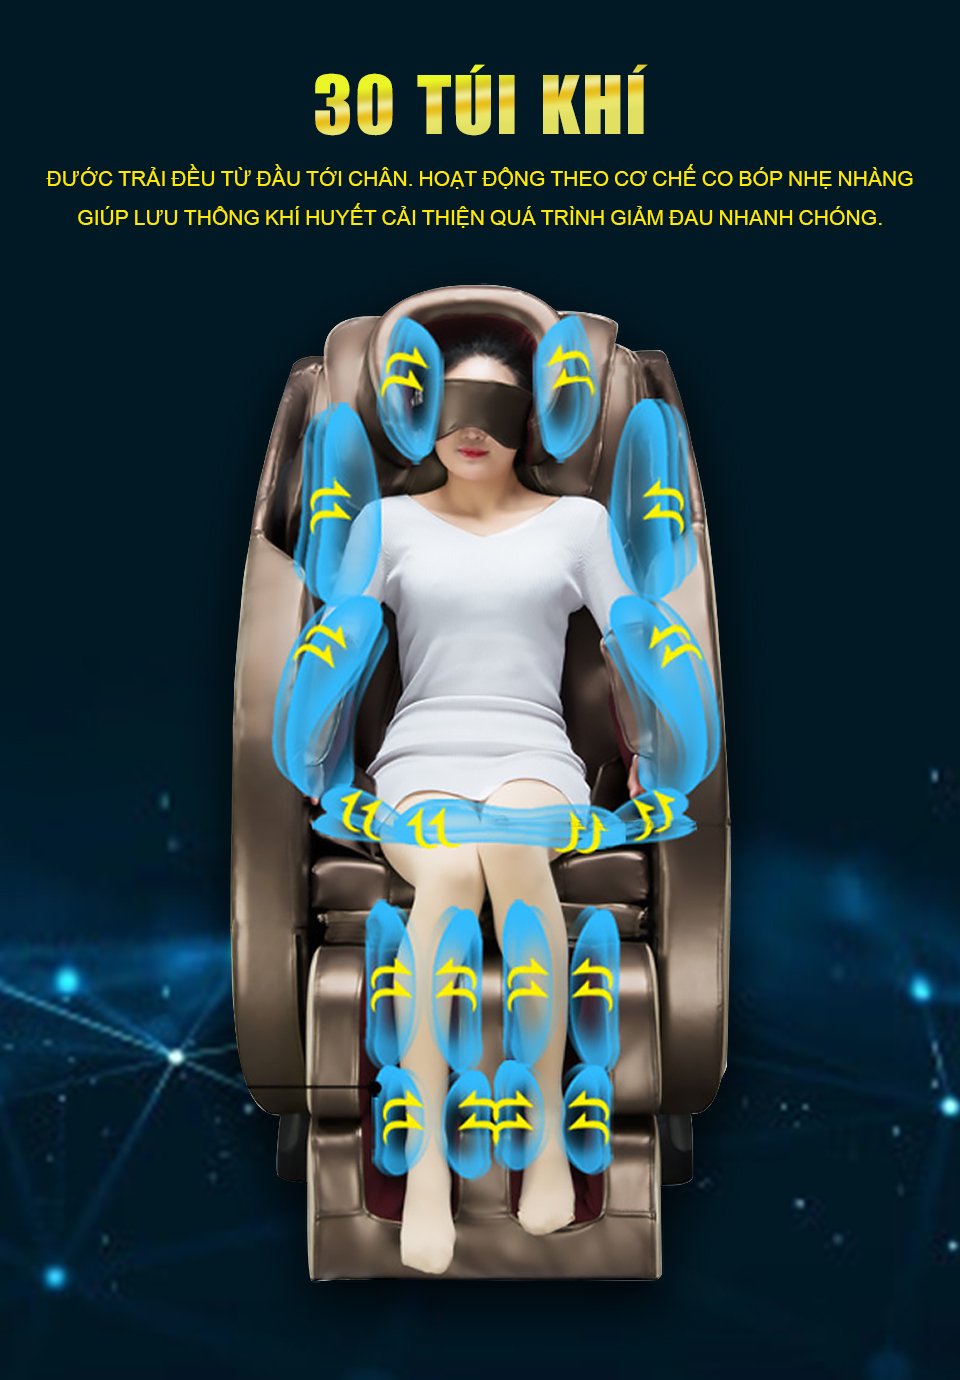 Hệ thống túi khí hiện đại của ghế massage được thiết kế để giúp lưu thông khí huyết nhằm cải thiện quá trình giảm đau